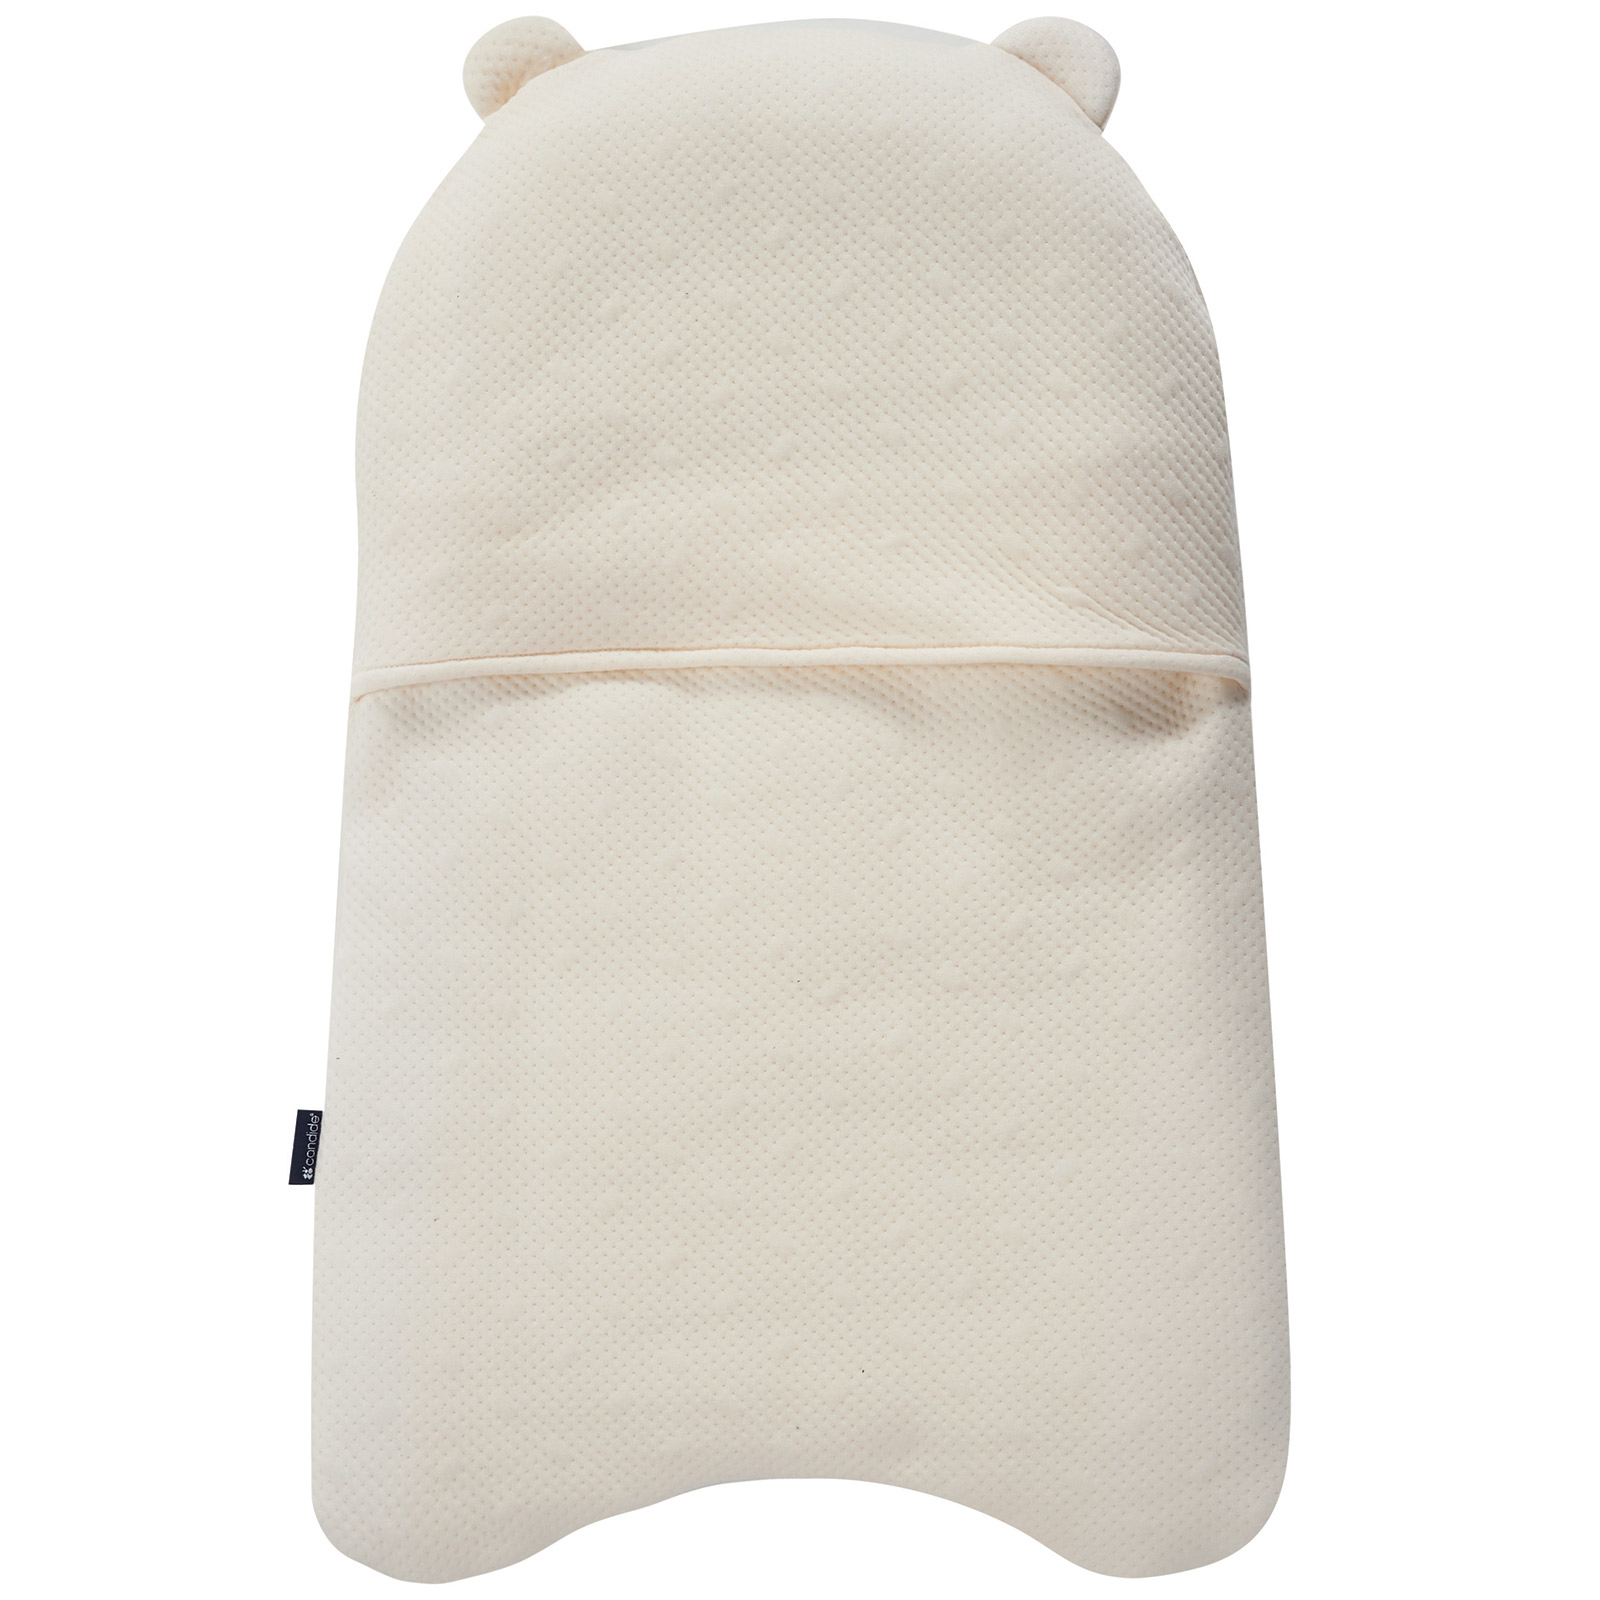 Réducteur de lit déhoussable Topponcino ours (Candide) - Image 2